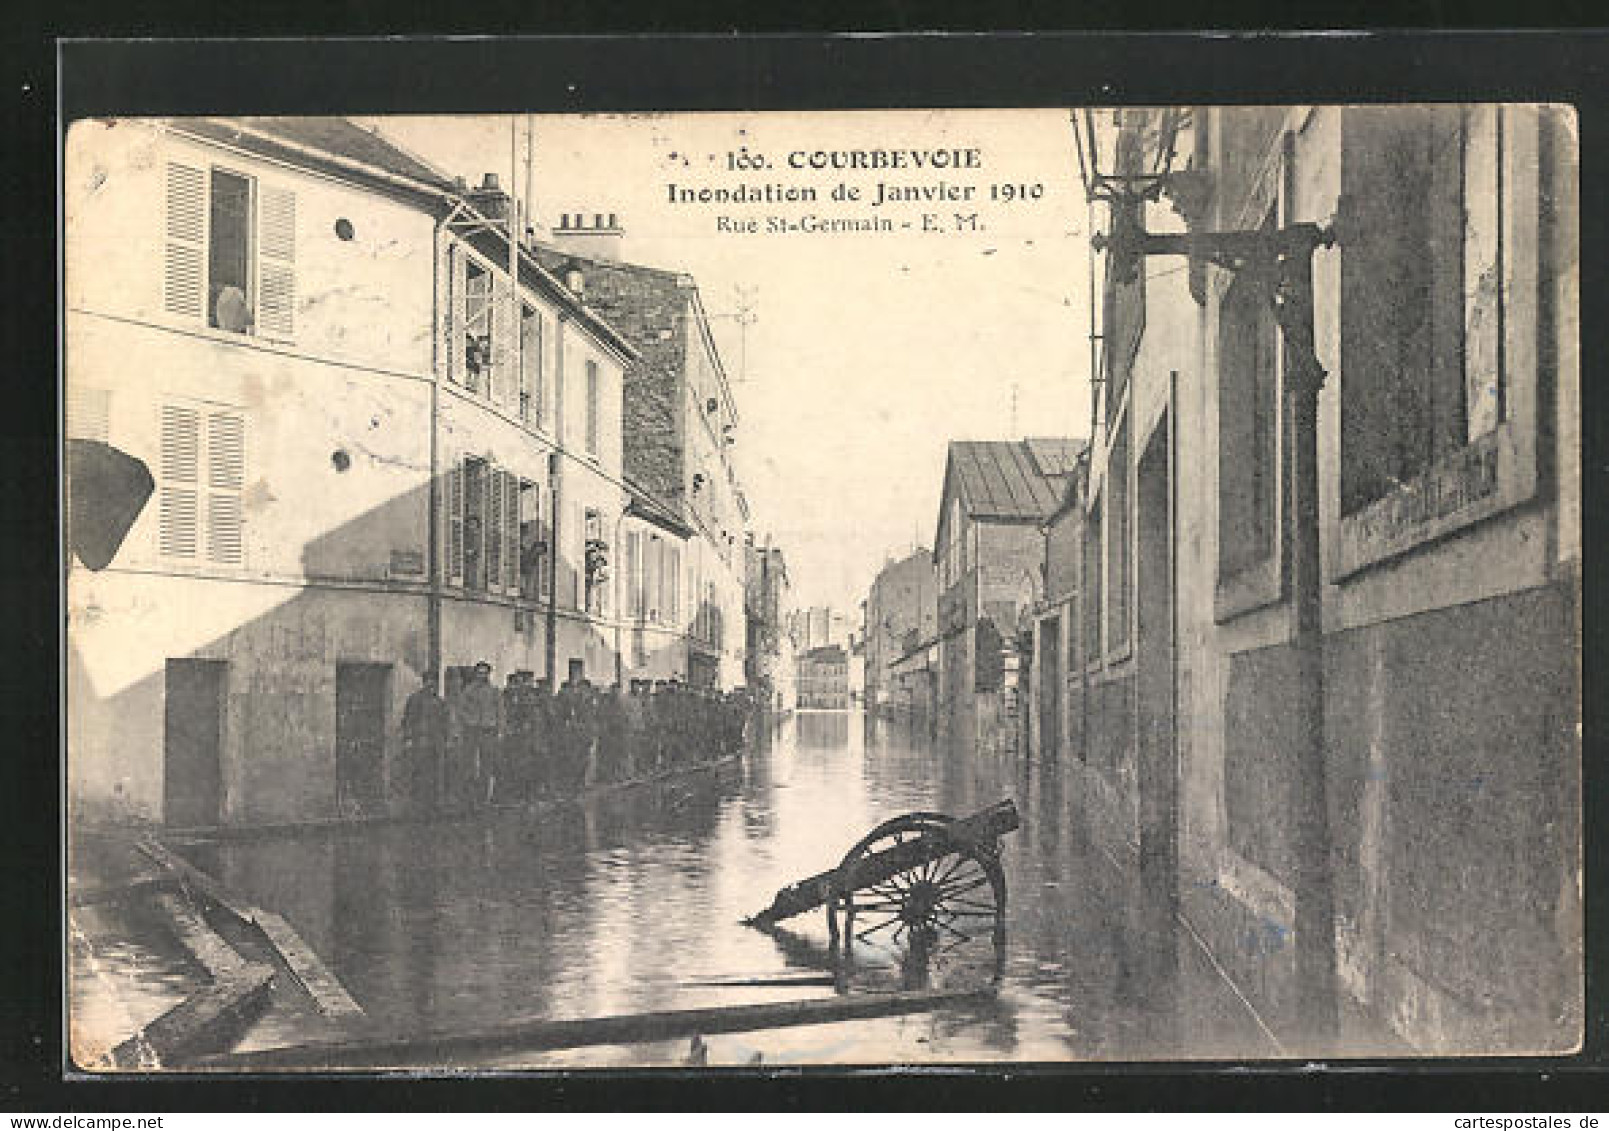 AK Inondation De Janvier 1910, Courbevoie - Rue St-Germain, Hochwasser  - Floods